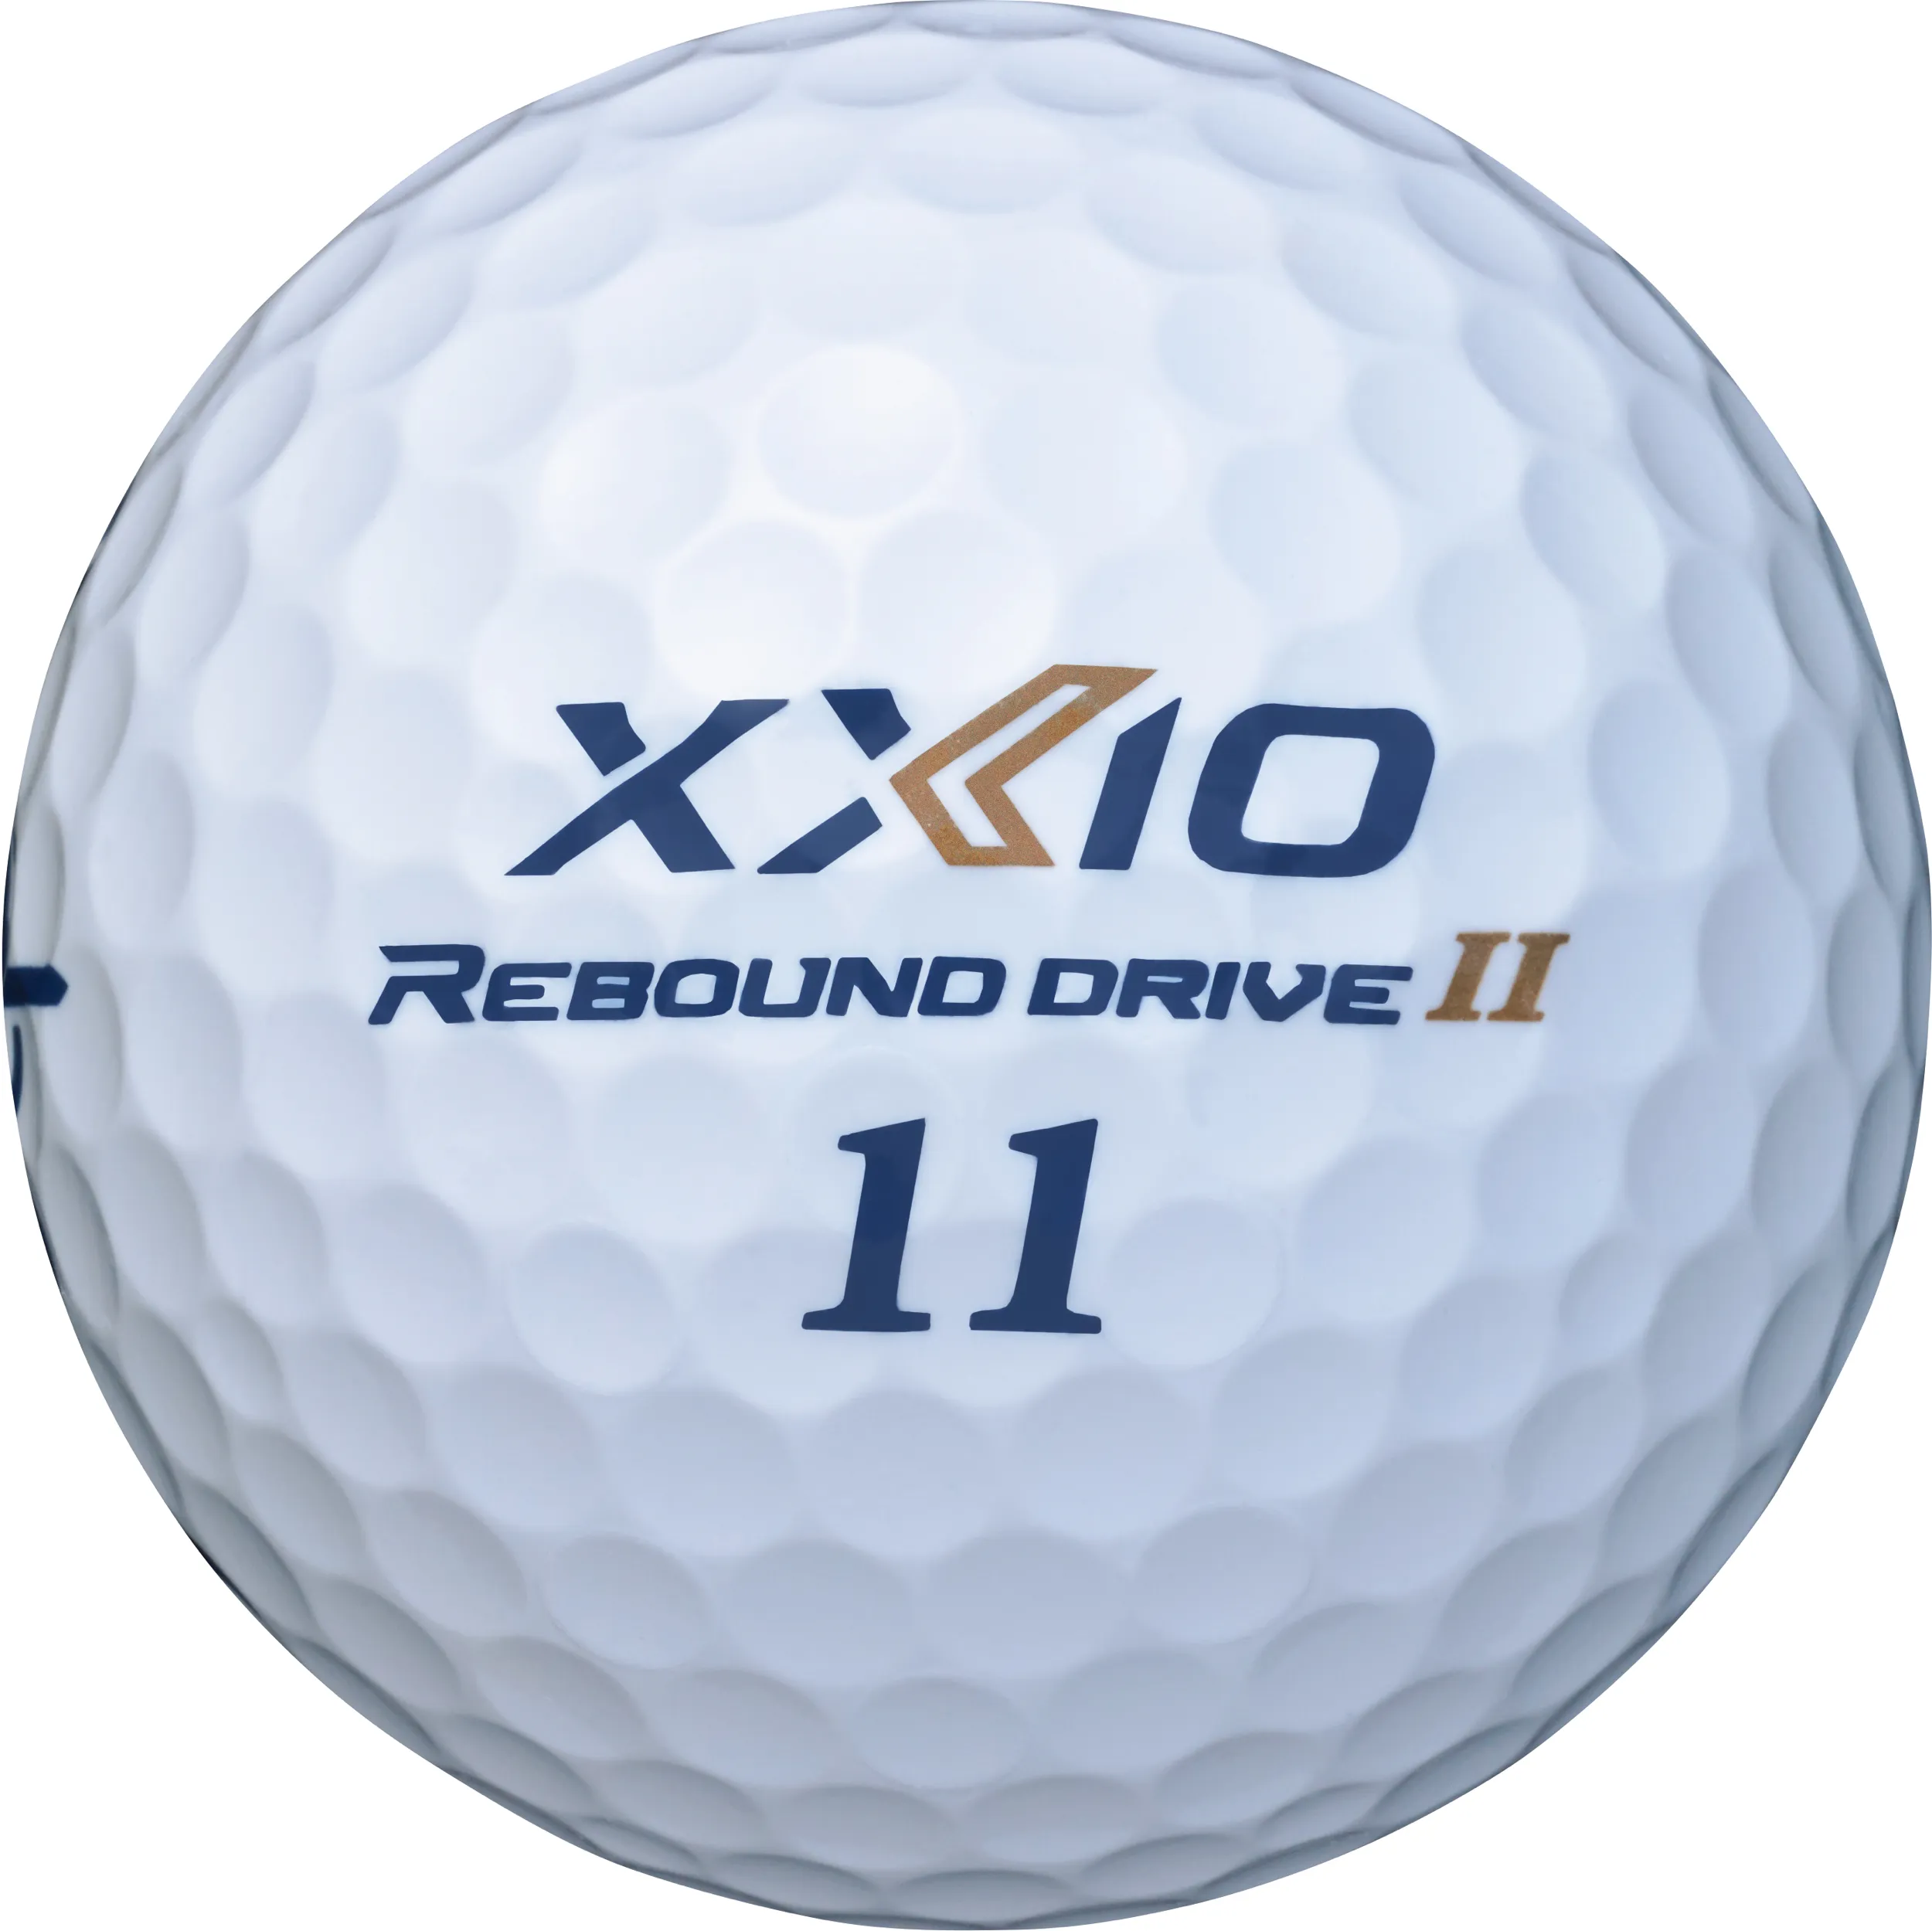 XXIO Rebound Drive II Golfbälle, weiß